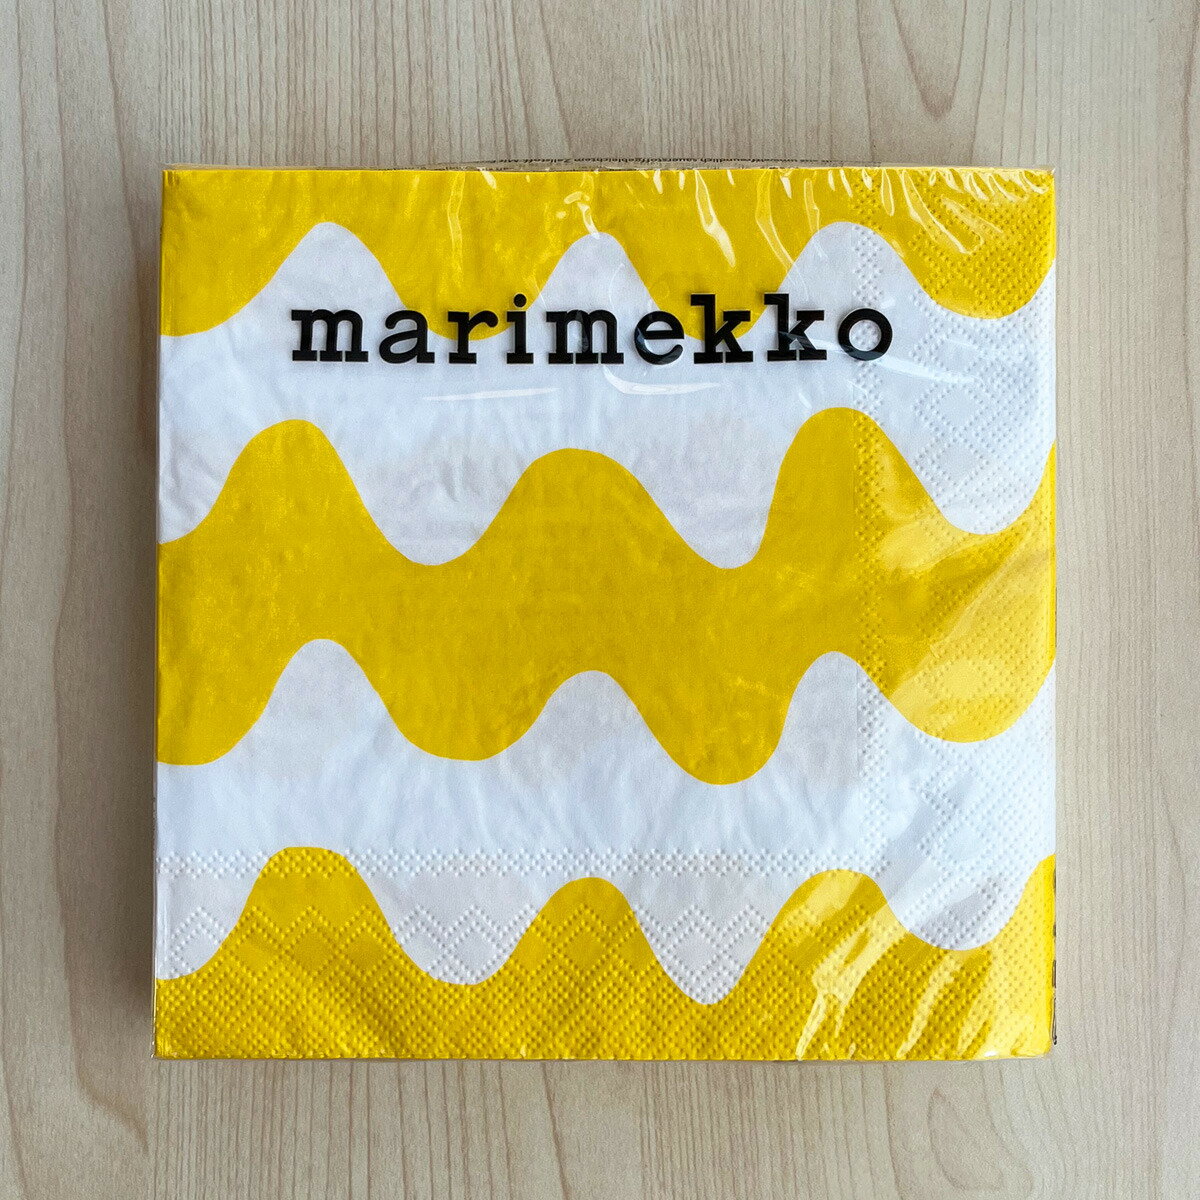 マリメッコ marimekko ペーパーナプキン 紙ナプキン ランチサイズ 20枚 554579 LOKKI ロッキ light yellow ホワイト+イエロー系 北欧